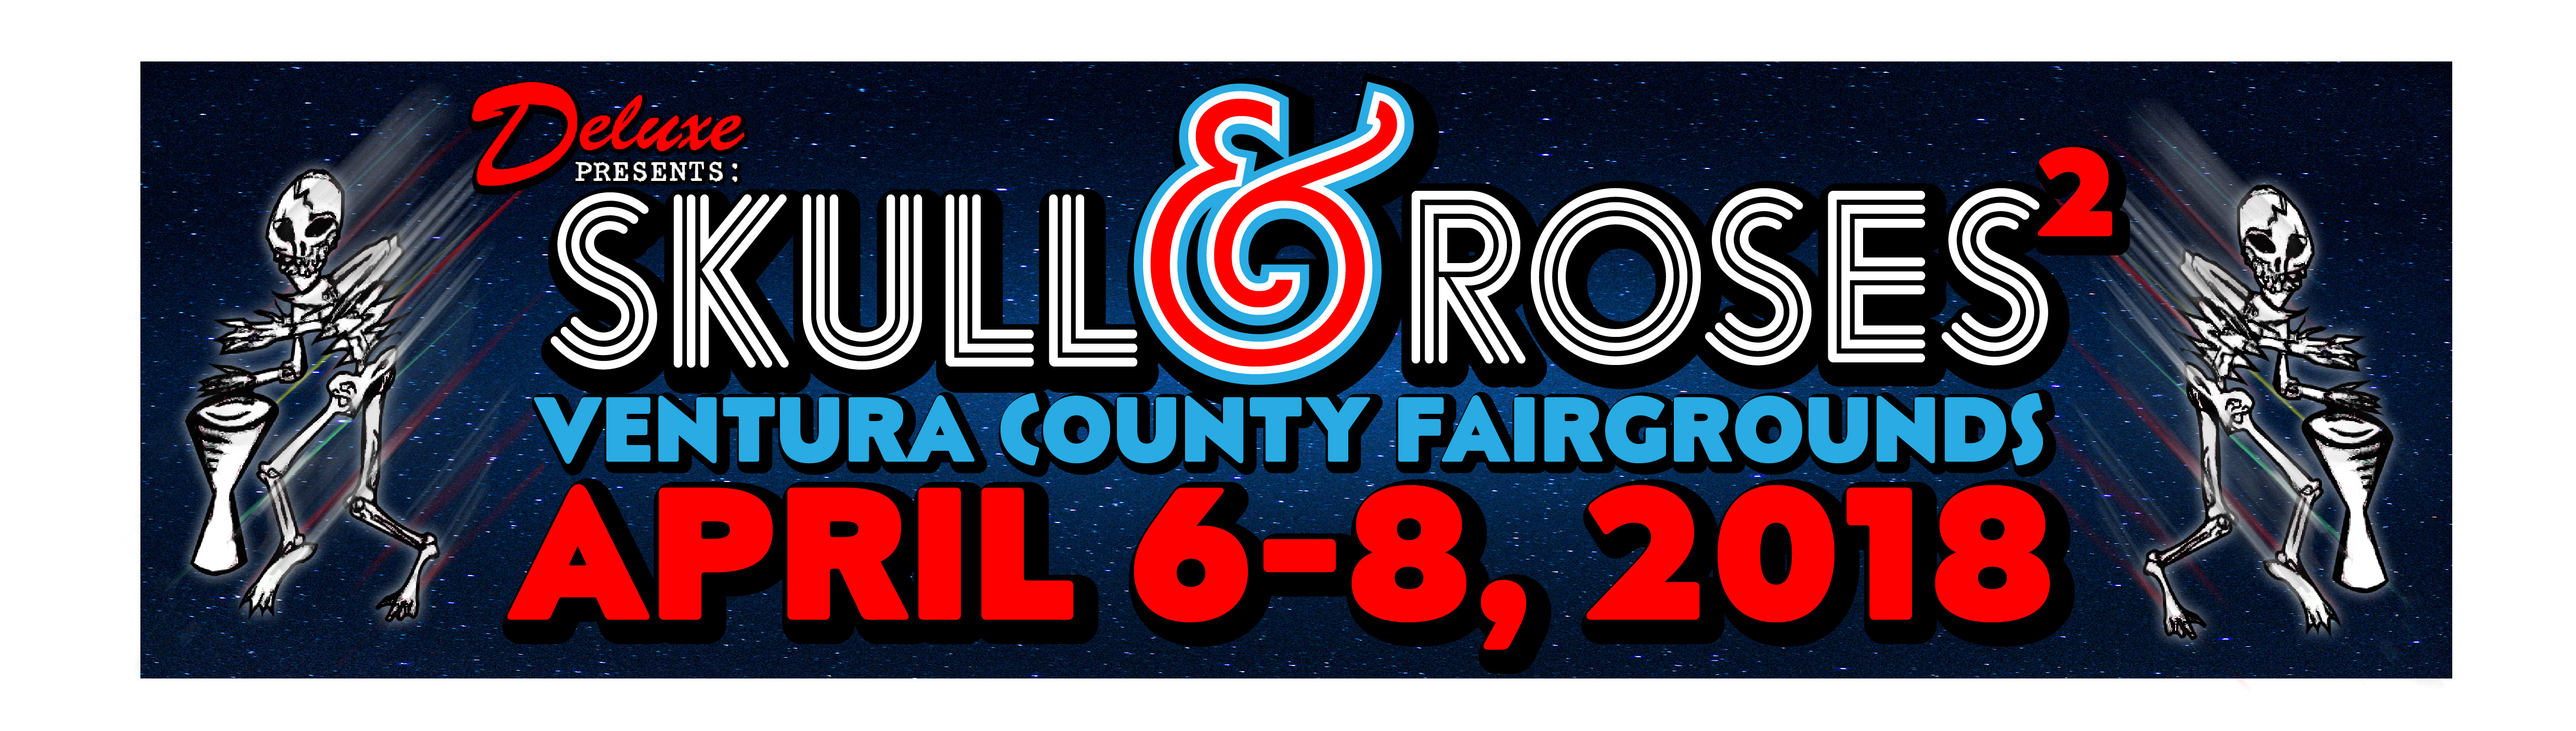 Skull and Roses Music Festival Ventura County Fairgrounds Grateful Web